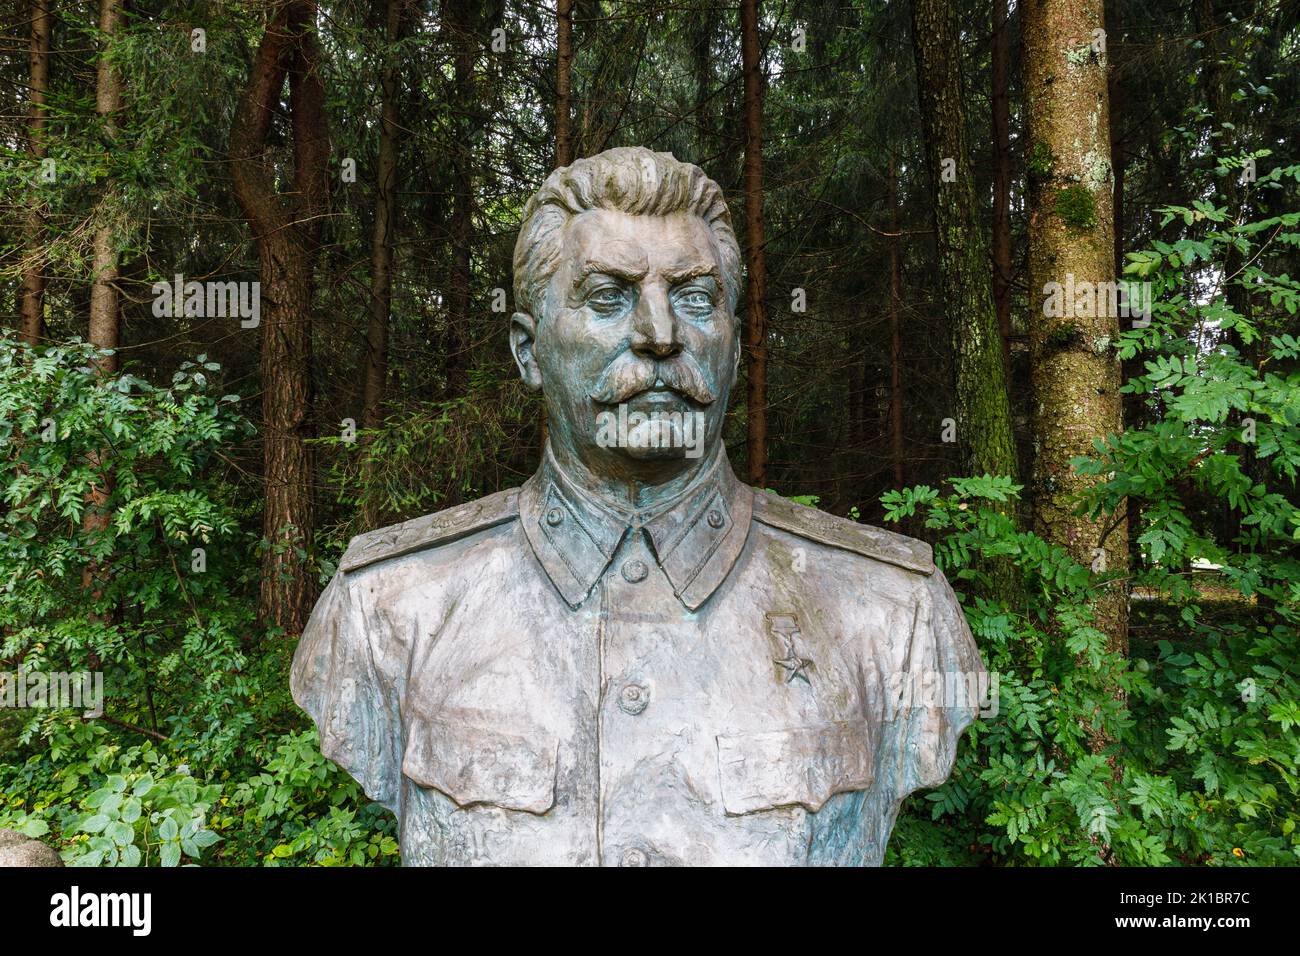 Buste sculptural de Staline, chef politique soviétique. Druskininkai, Lituanie, 12 septembre 2022 Banque D'Images